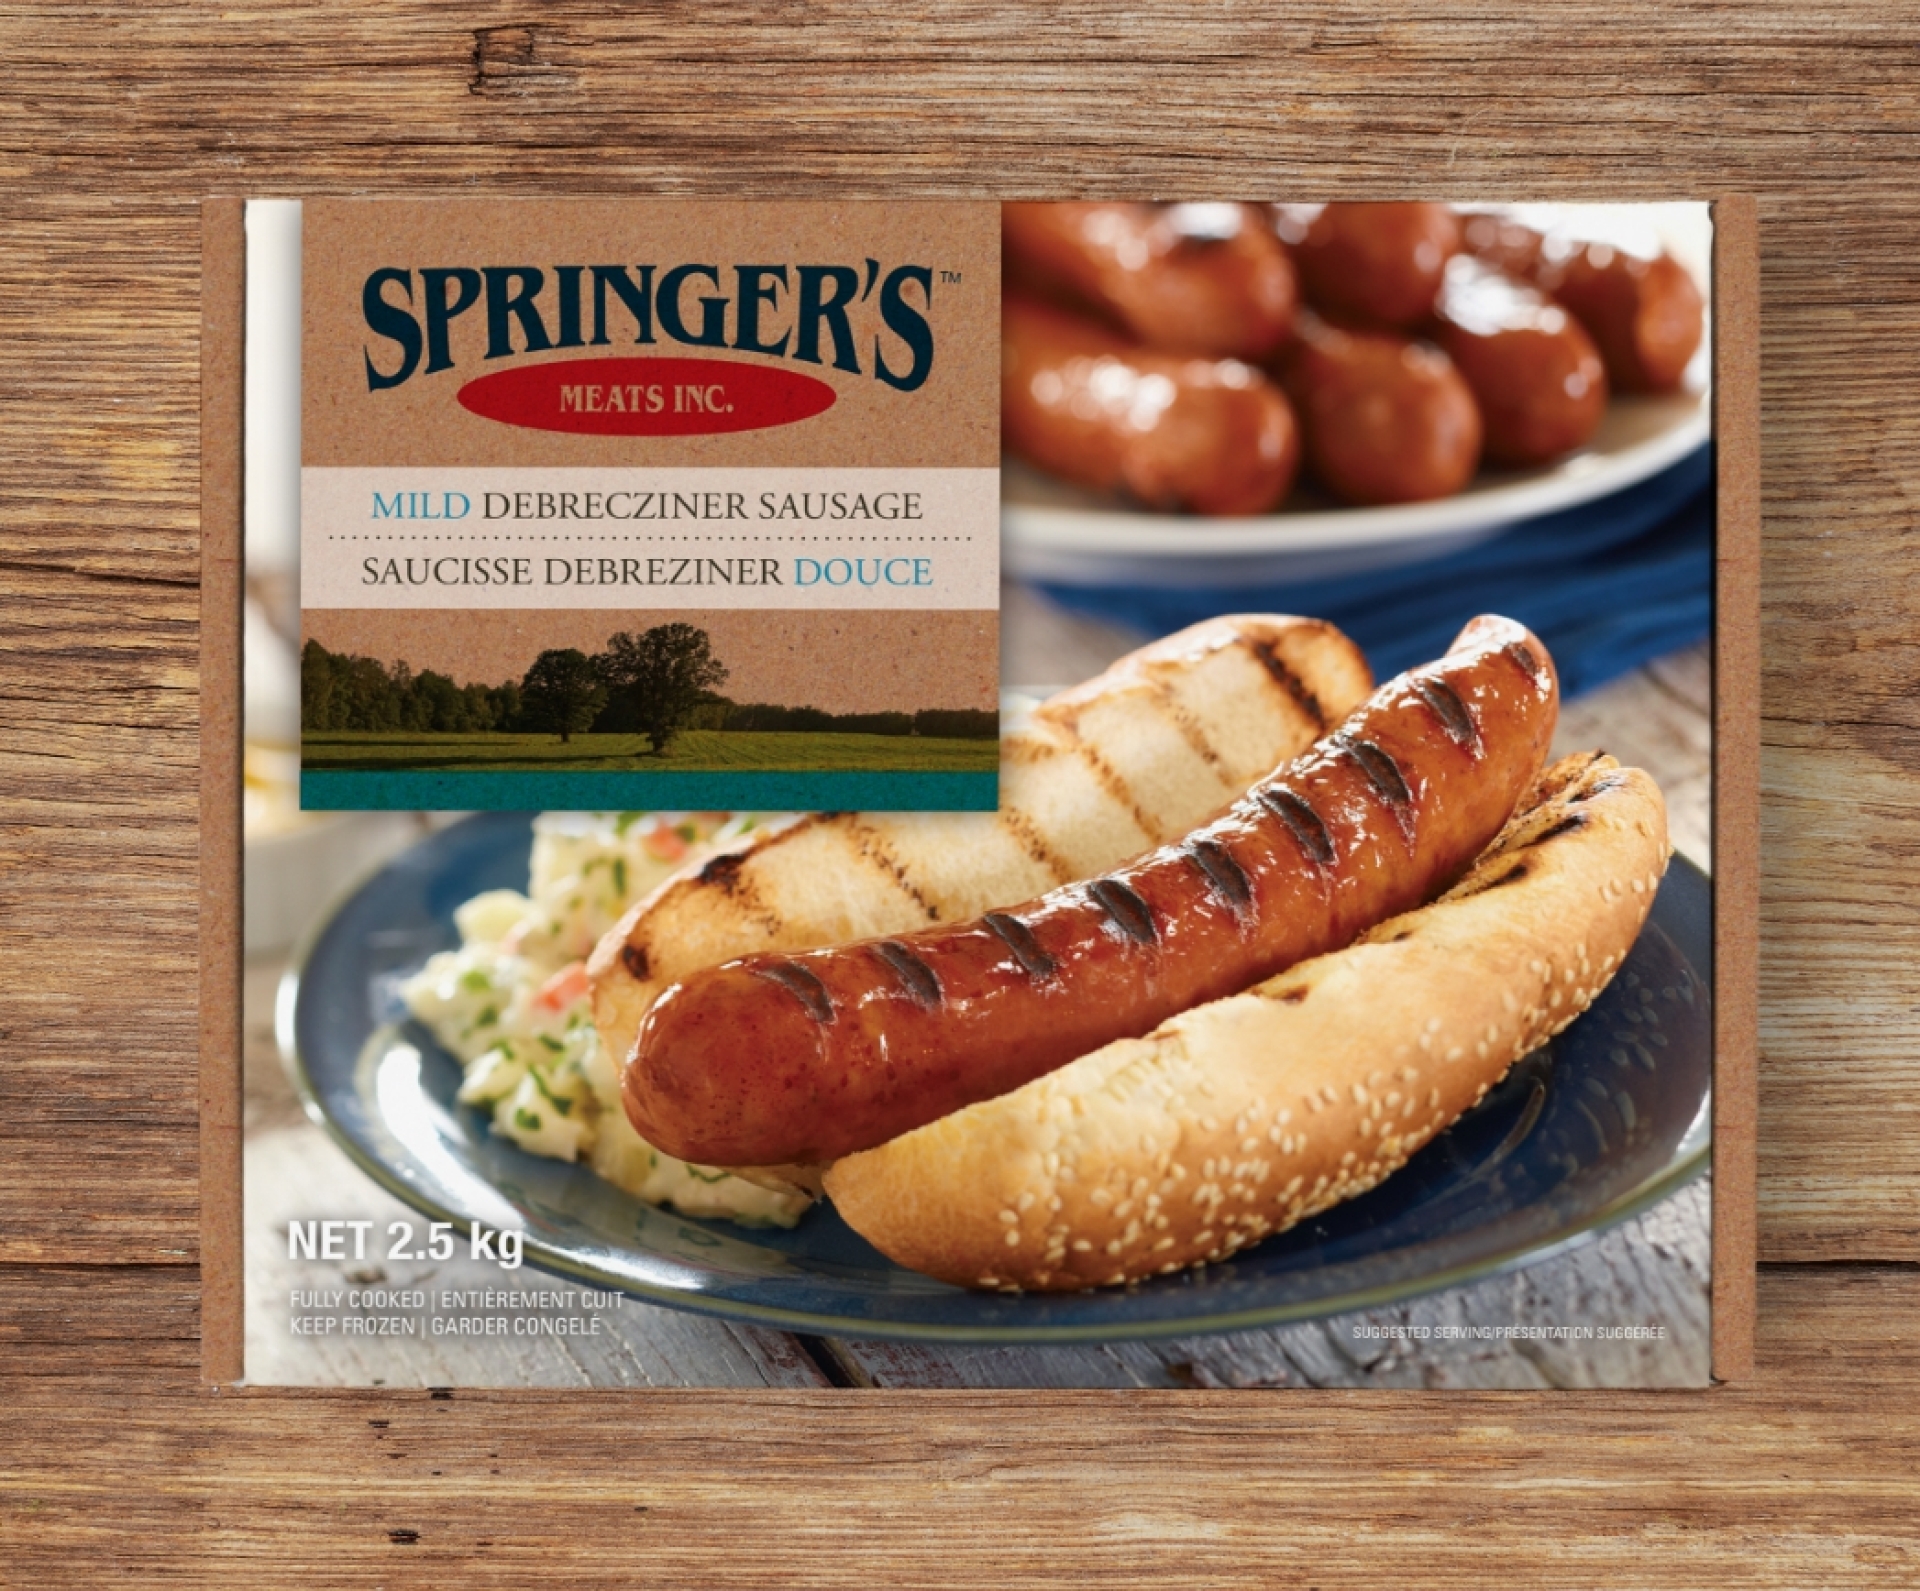 A box of Springer's mild sausage packaging design